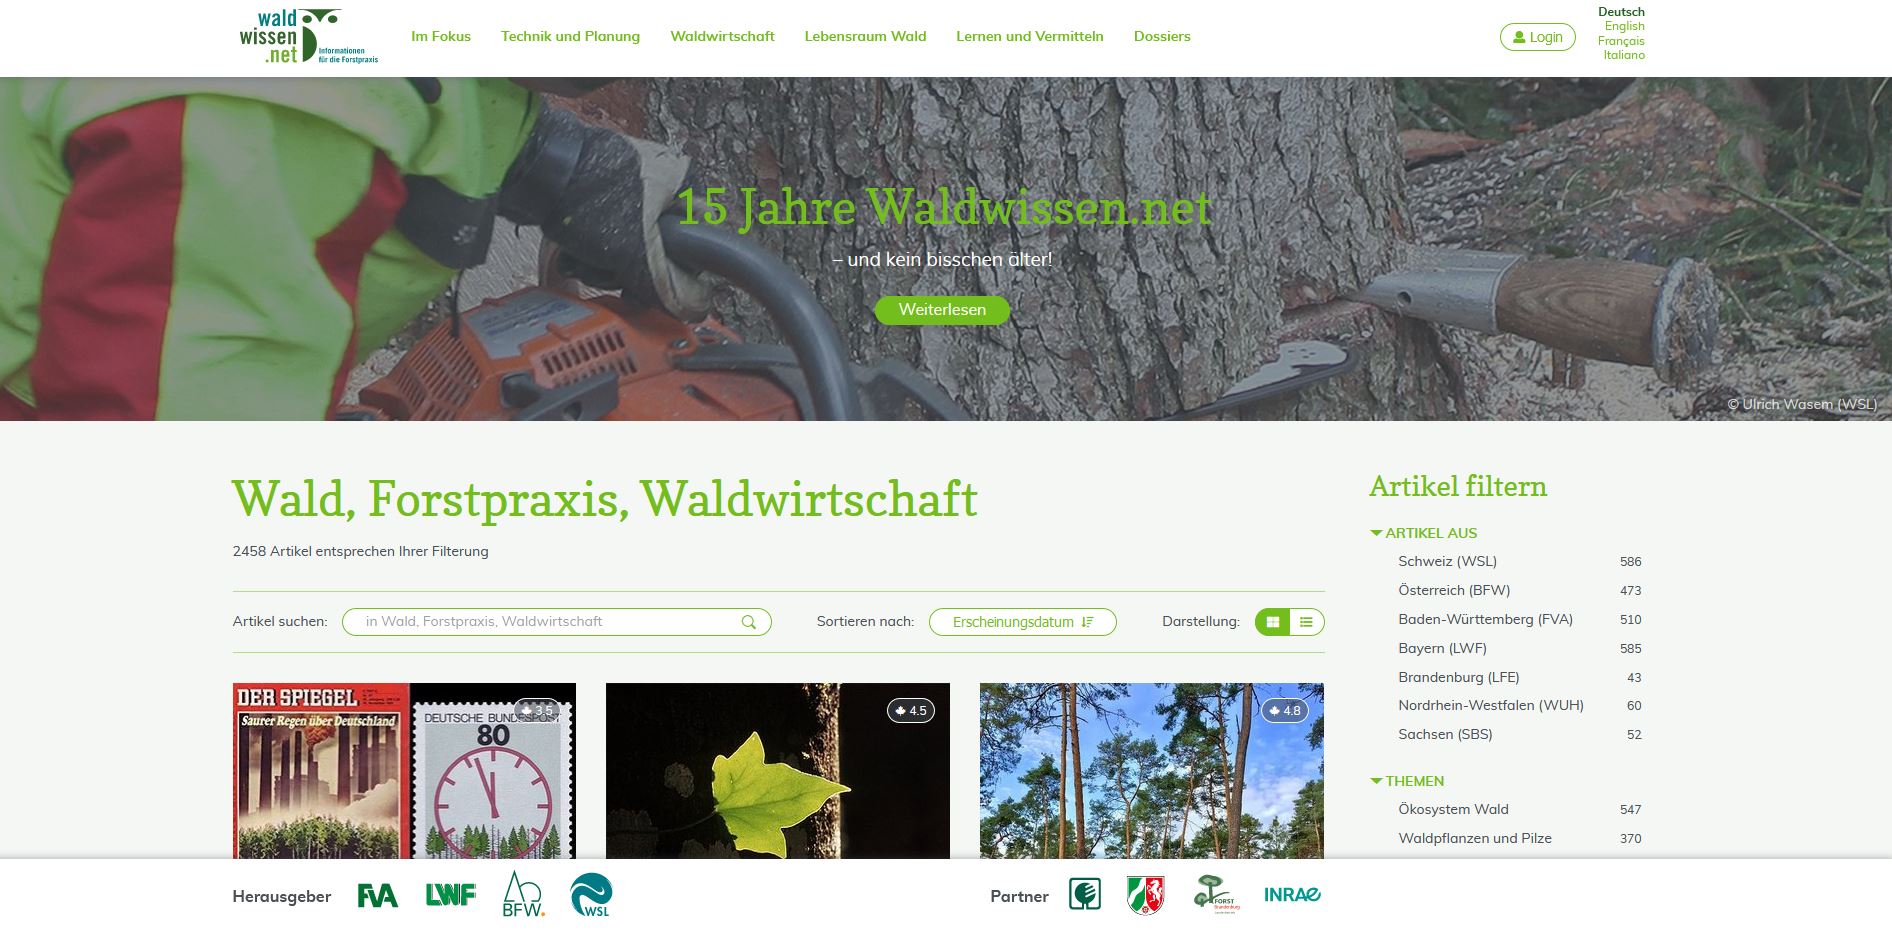 Startseite von waldwissen.net, oben großes Bild von Baum mit Motorsaege